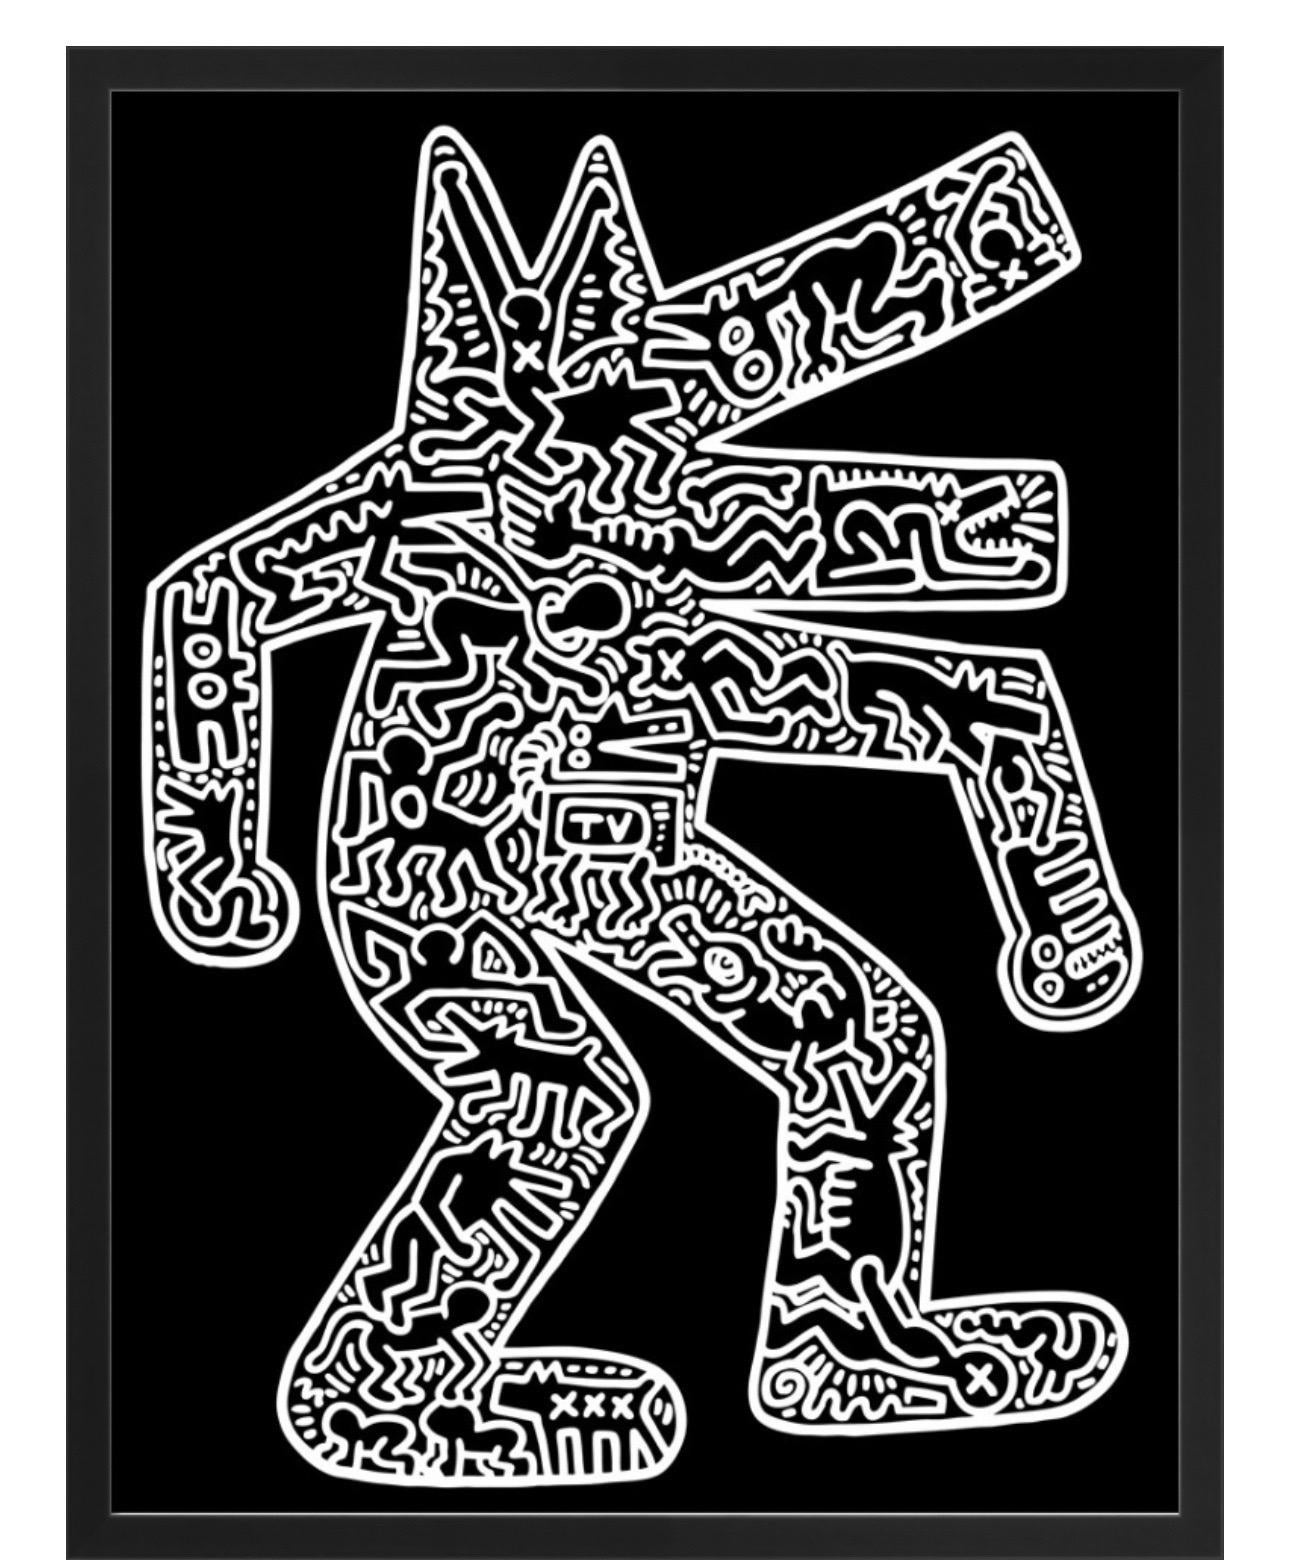 Keith Haring, Hund, 1985 (gerahmt)

48 x 63cm

Giclée-Druck auf mattem 250-Gramm-Digitalpapier aus säure- und chlorfreiem Zellstoff, hergestellt in Deutschland. Hergestellt auf einer Machinier-Maschine, die 1803 von den Gebrüdern Fourdrinier